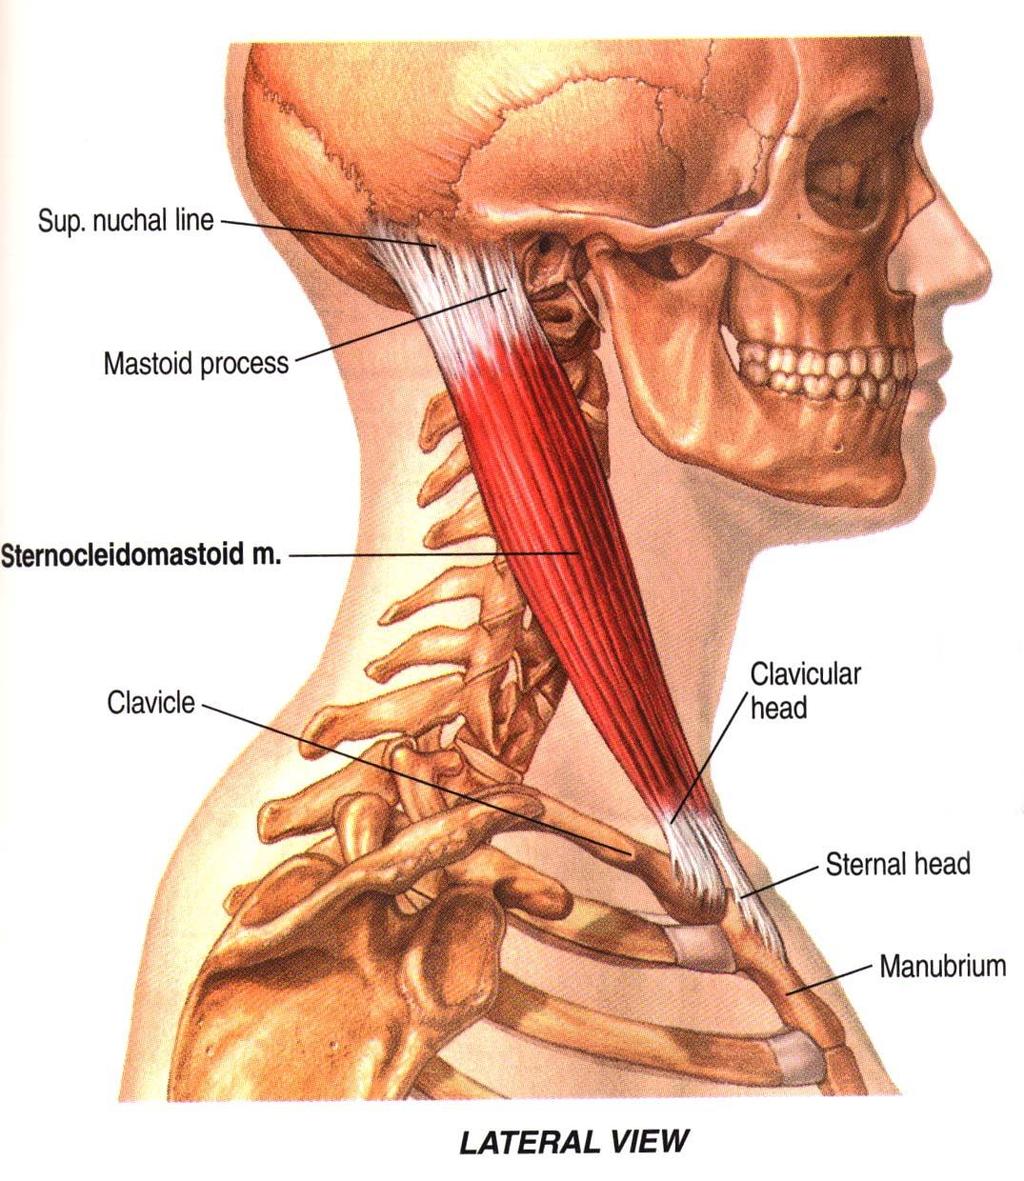 Muscolatura del collo: Sternocleidomastoideo Capo fisso: Eleva lo sterno -> inspiratorio Torace Fisso: contrazione unilaterale: inclina